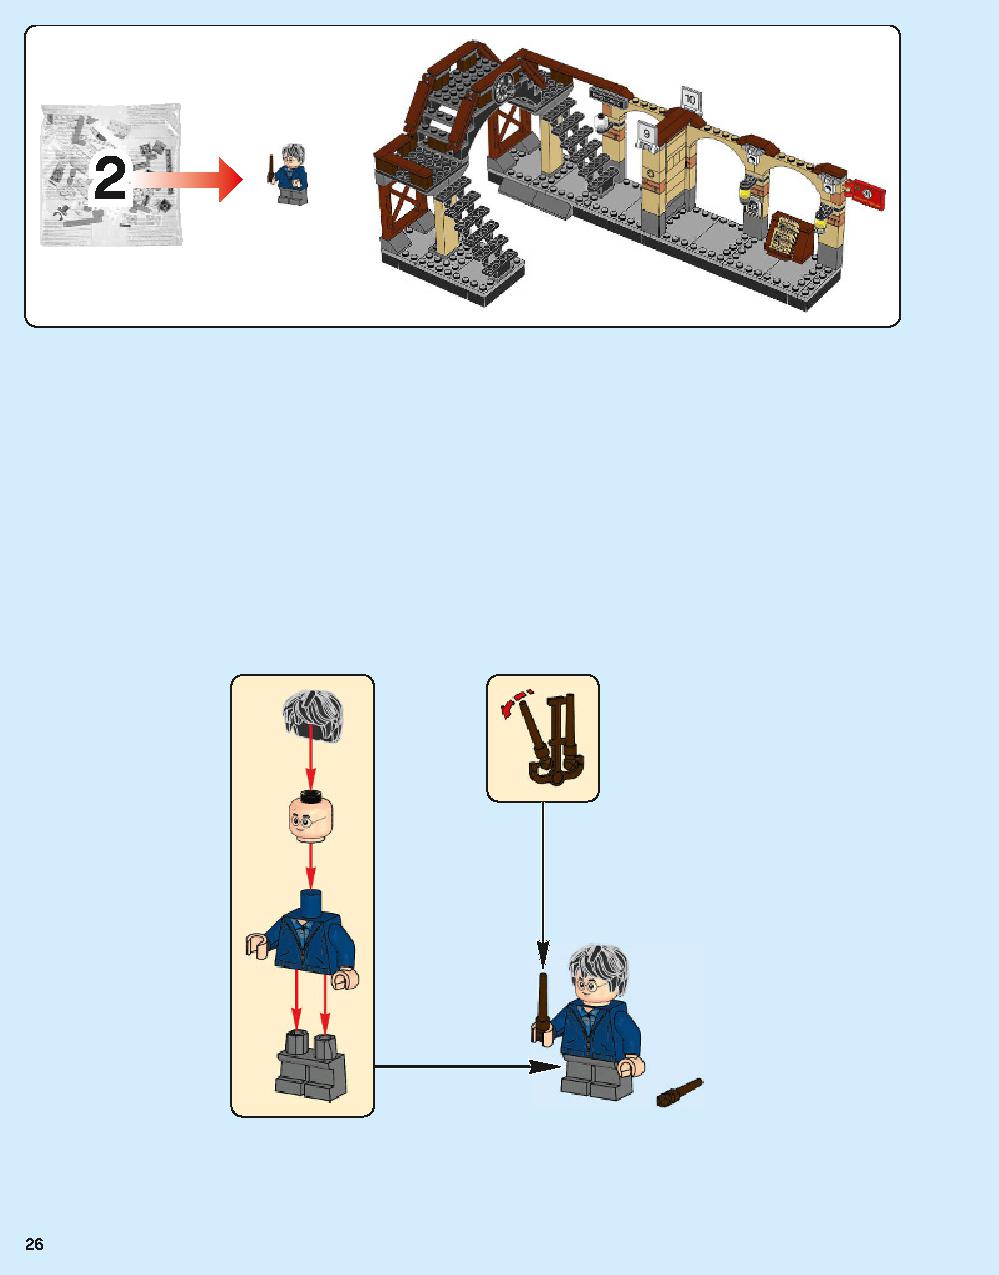 ホグワーツ特急 75955 レゴの商品情報 レゴの説明書・組立方法 26 page